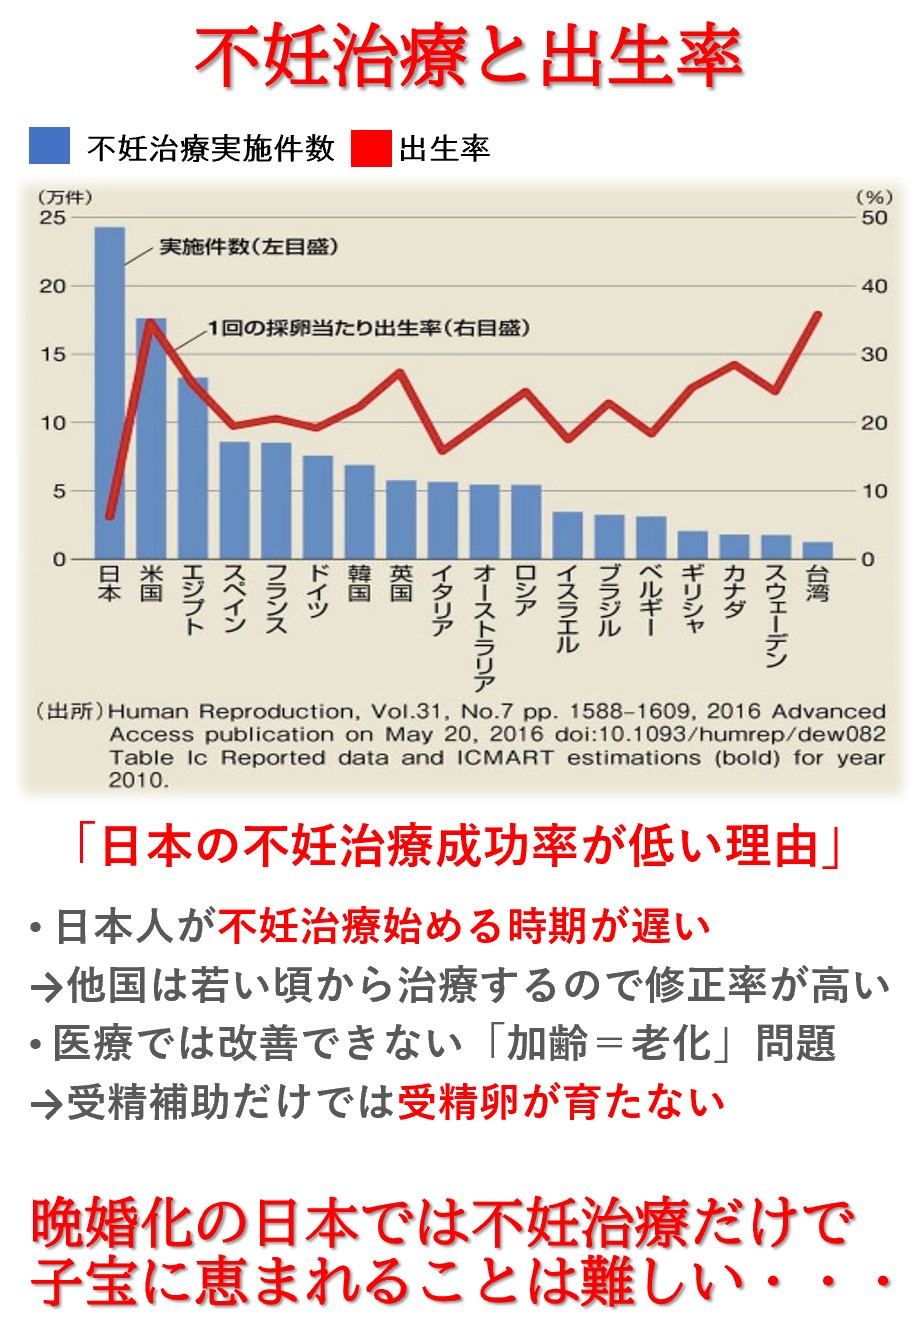 非常に高度な日本の不妊治療ですが実は不妊治療実施に伴う赤ちゃんの出生率は世界的に視ても低いランクにあります。それは、日本の晩婚化が進み不妊治療を受ける年齢が世界に比べても遅いからなのです。